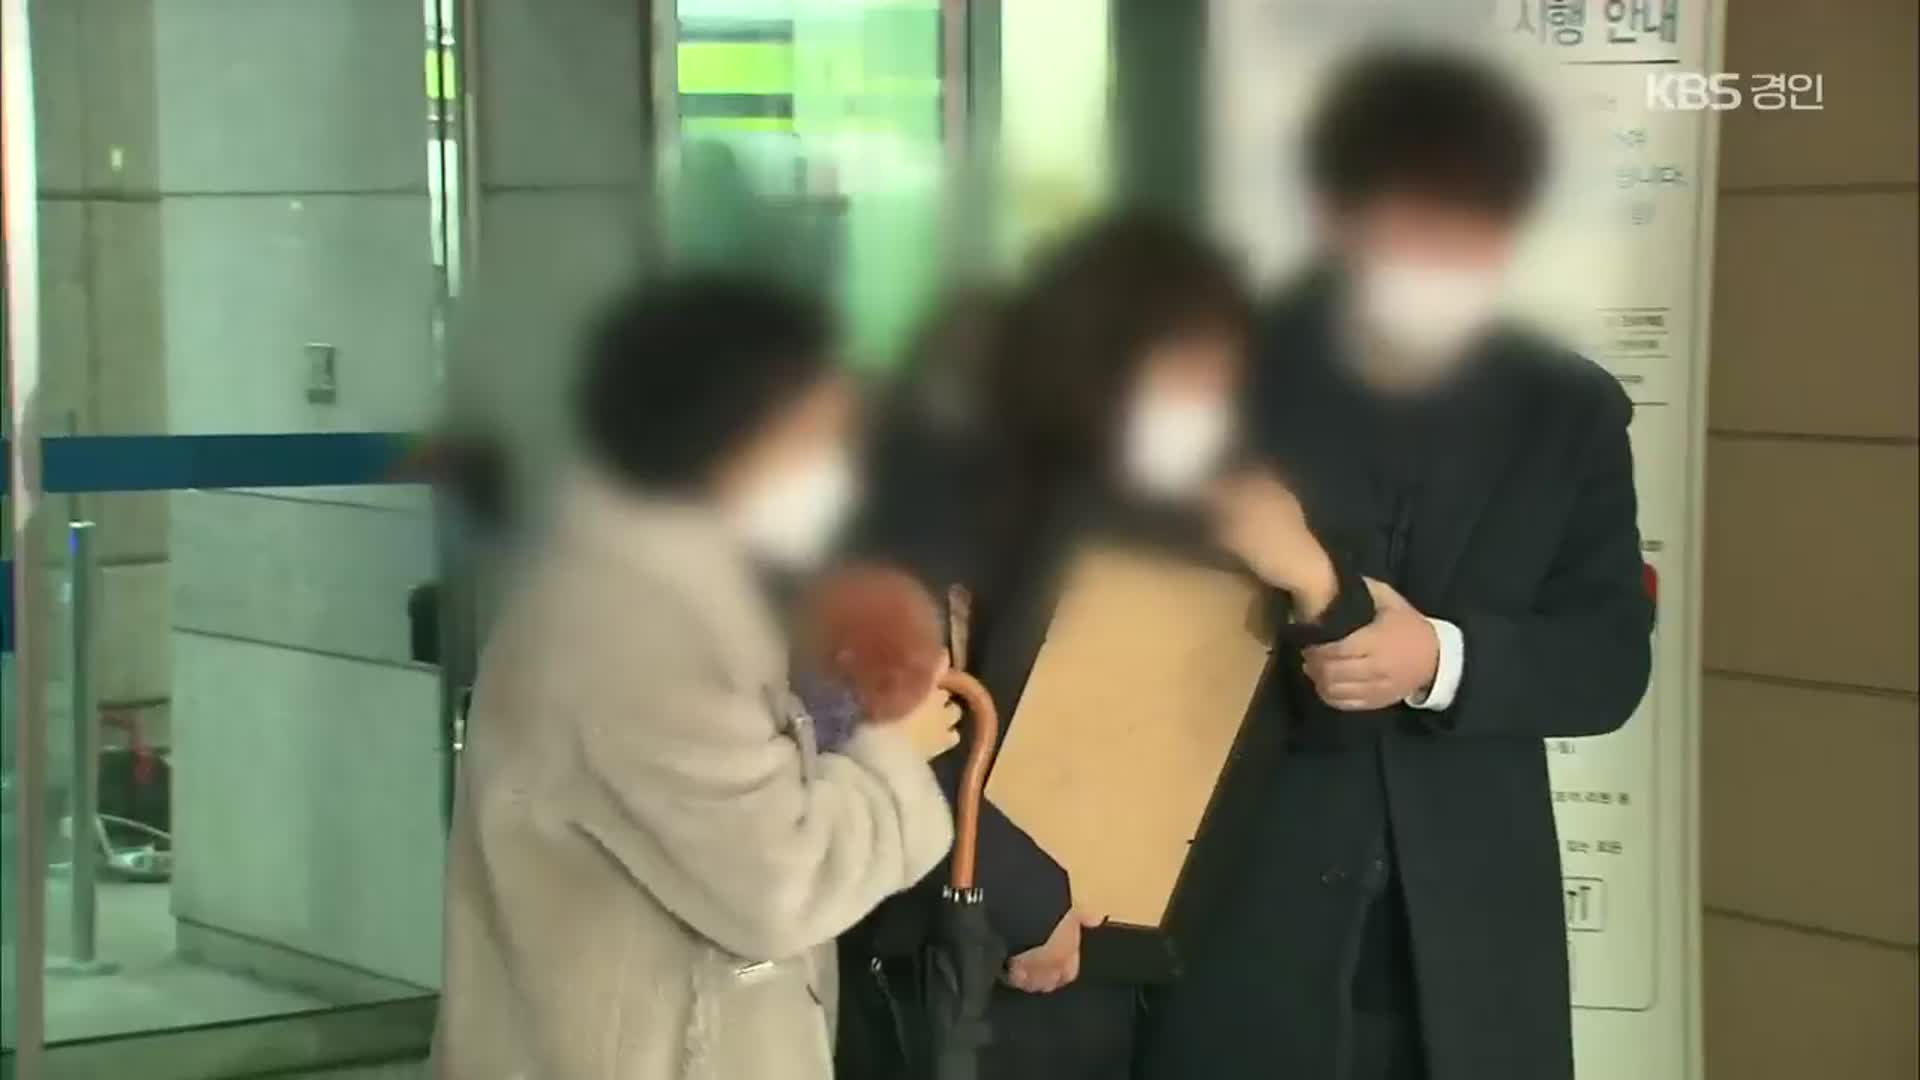 ‘낮술 운전’ 6세 아동 숨지게 한 50대, 징역 8년…유족 “너무하다” 오열